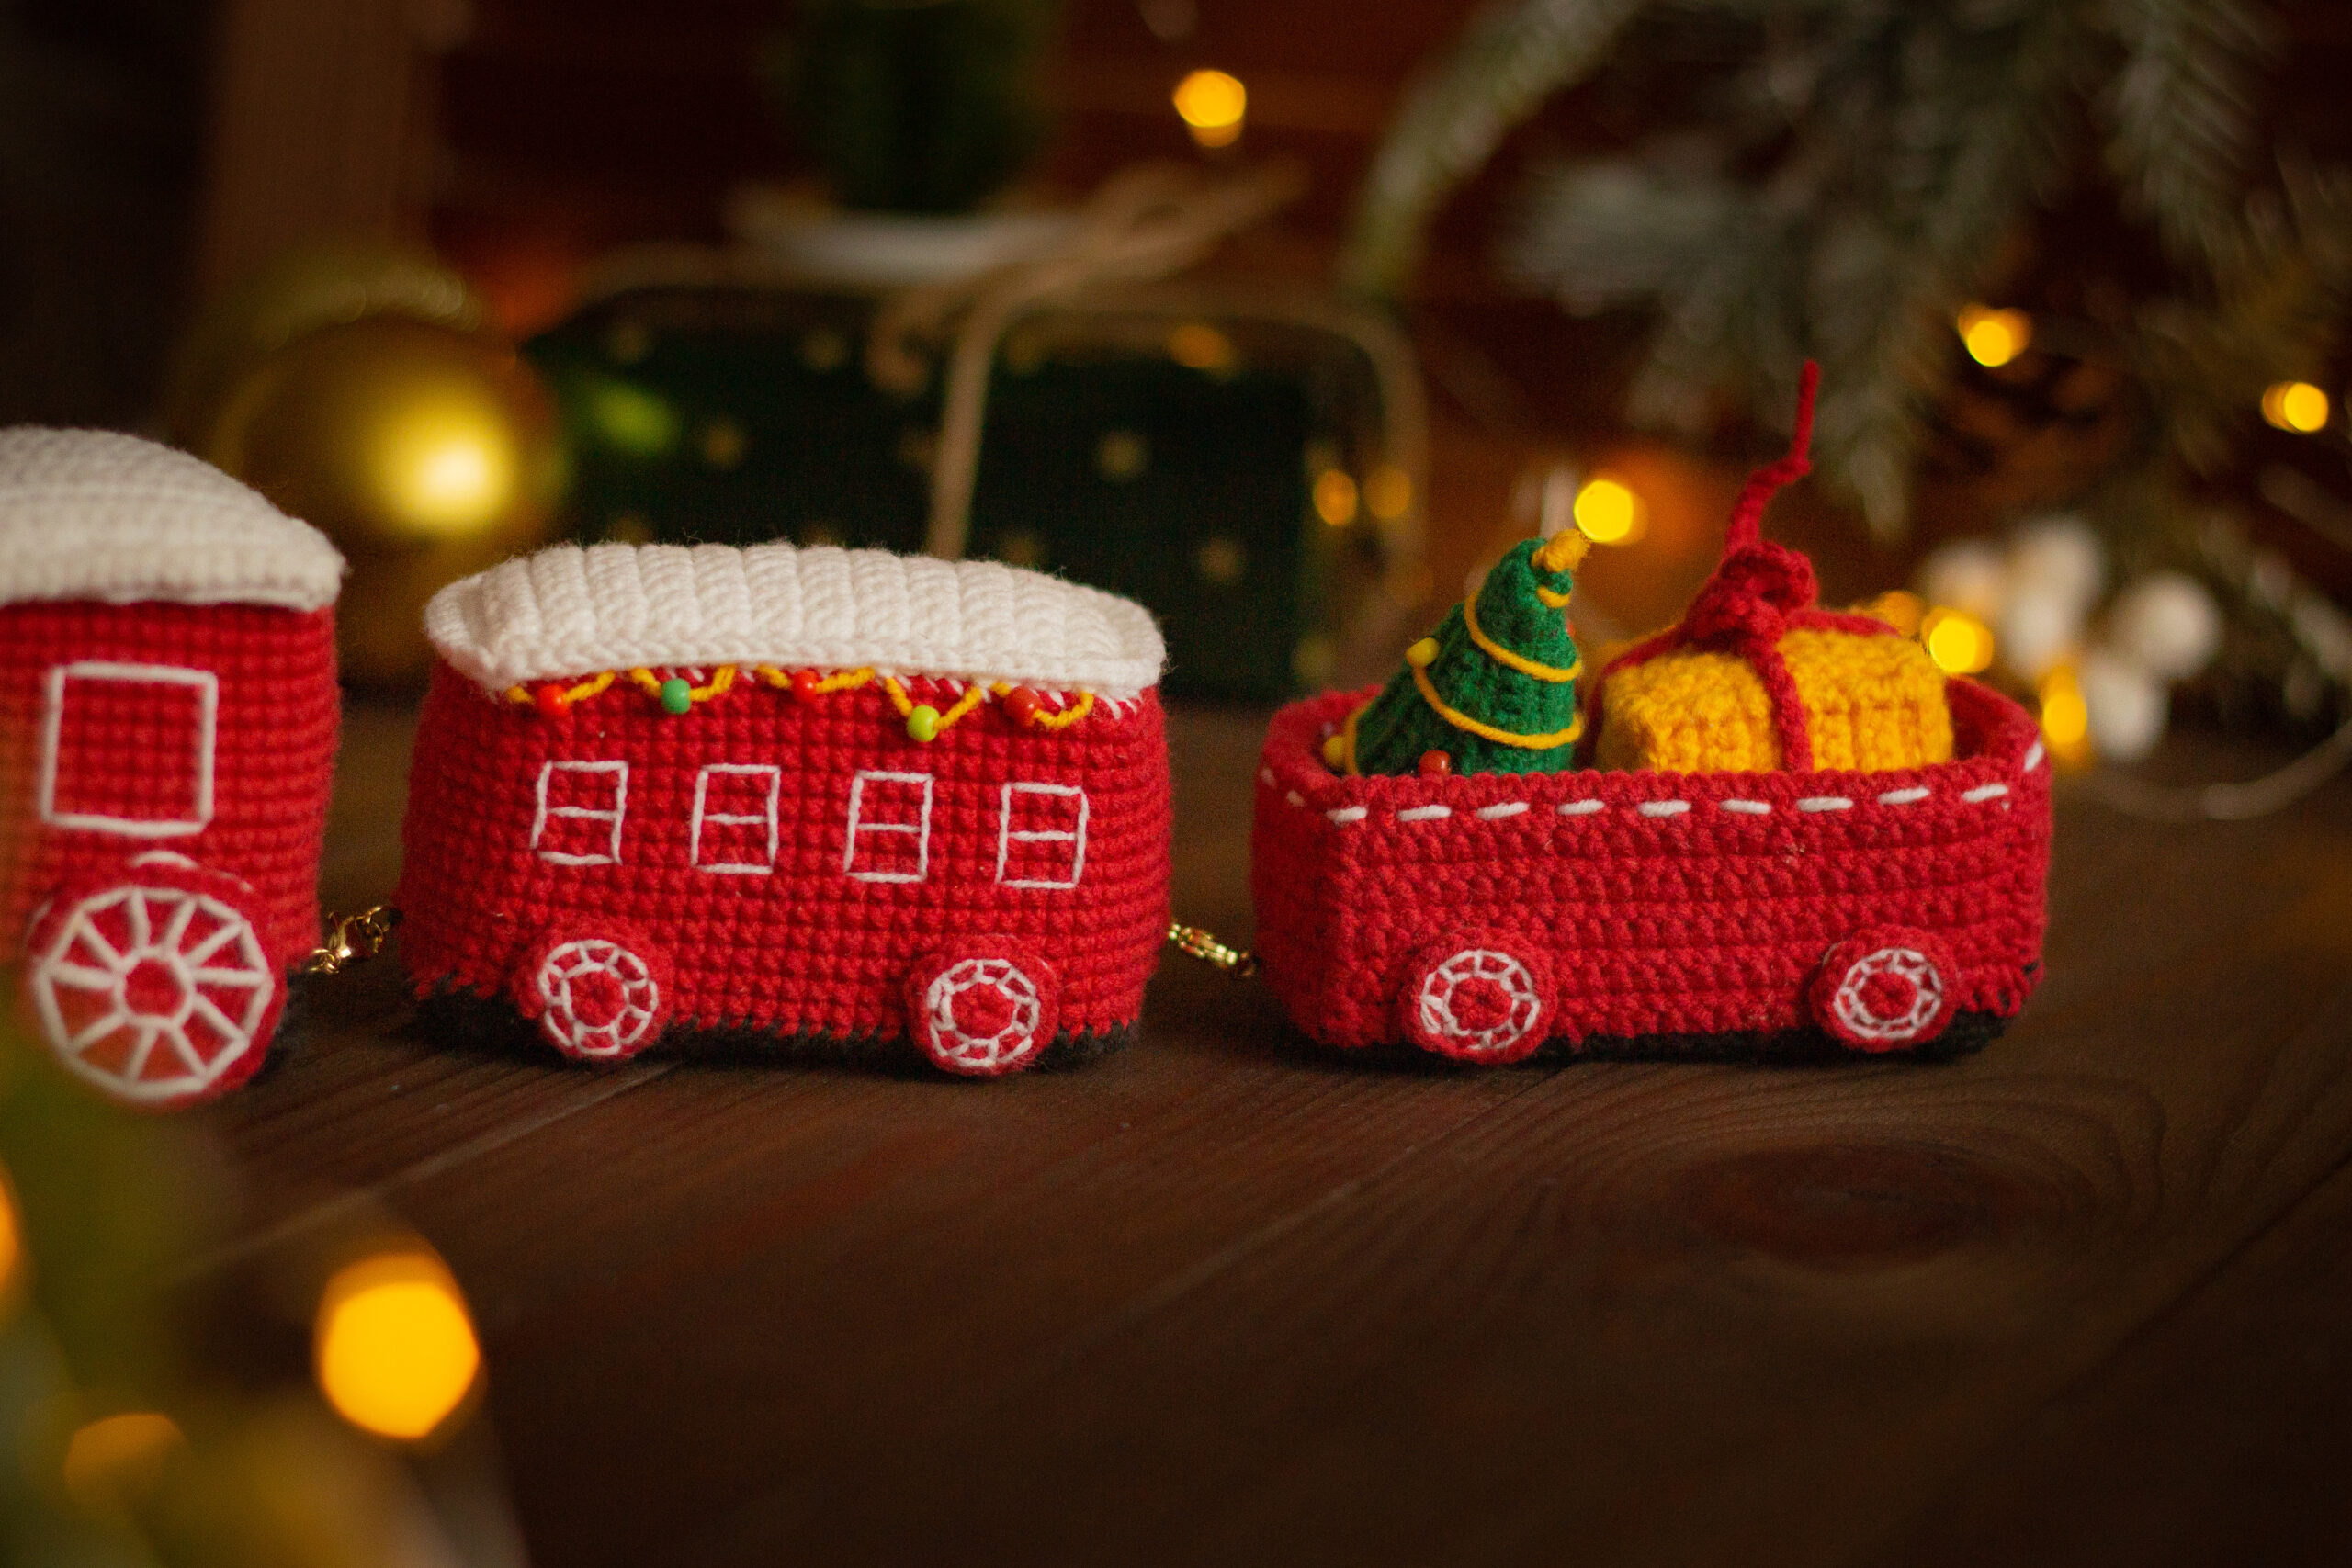 Décorations de Noël, motif grenade, jouets au crochet, motifs au